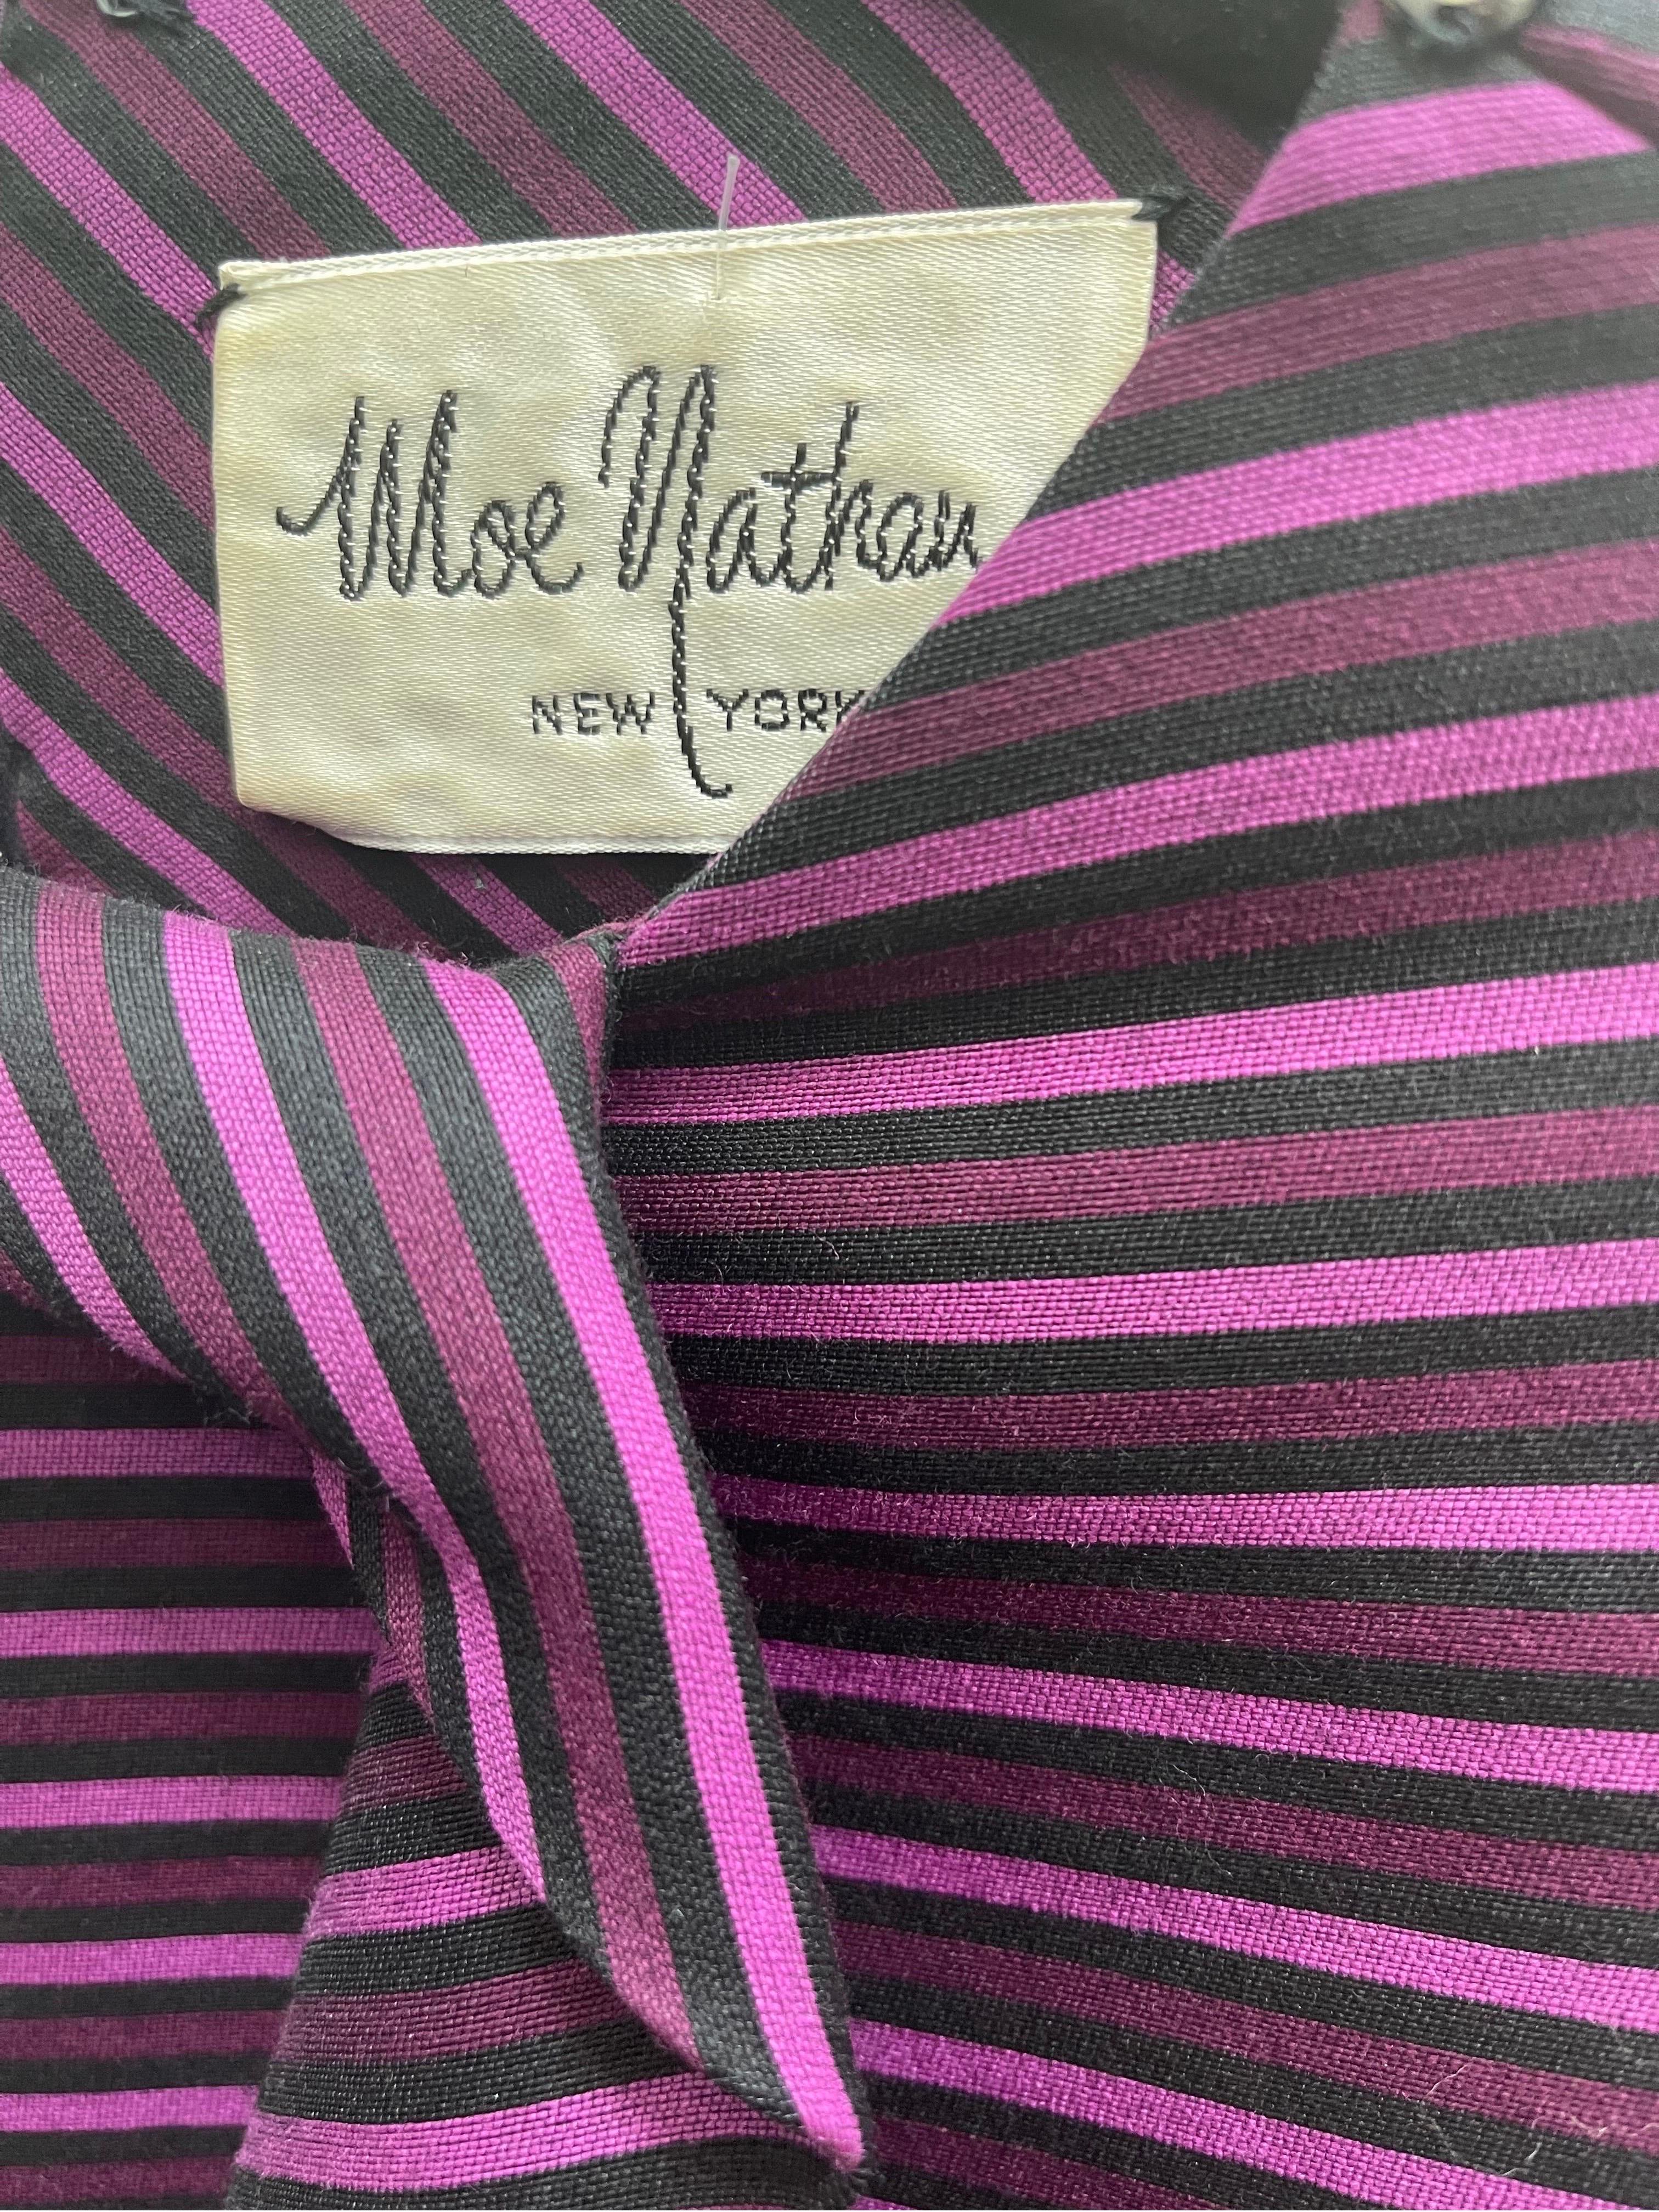 Chic Avant Garde MOE NATHAN New York robe à manches longues en soie rayée violette ! Col origami avec boutons-pression. Fermeture à glissière entièrement métallique dans le dos avec fermeture à crochet. Une silhouette très flatteuse avec un imprimé